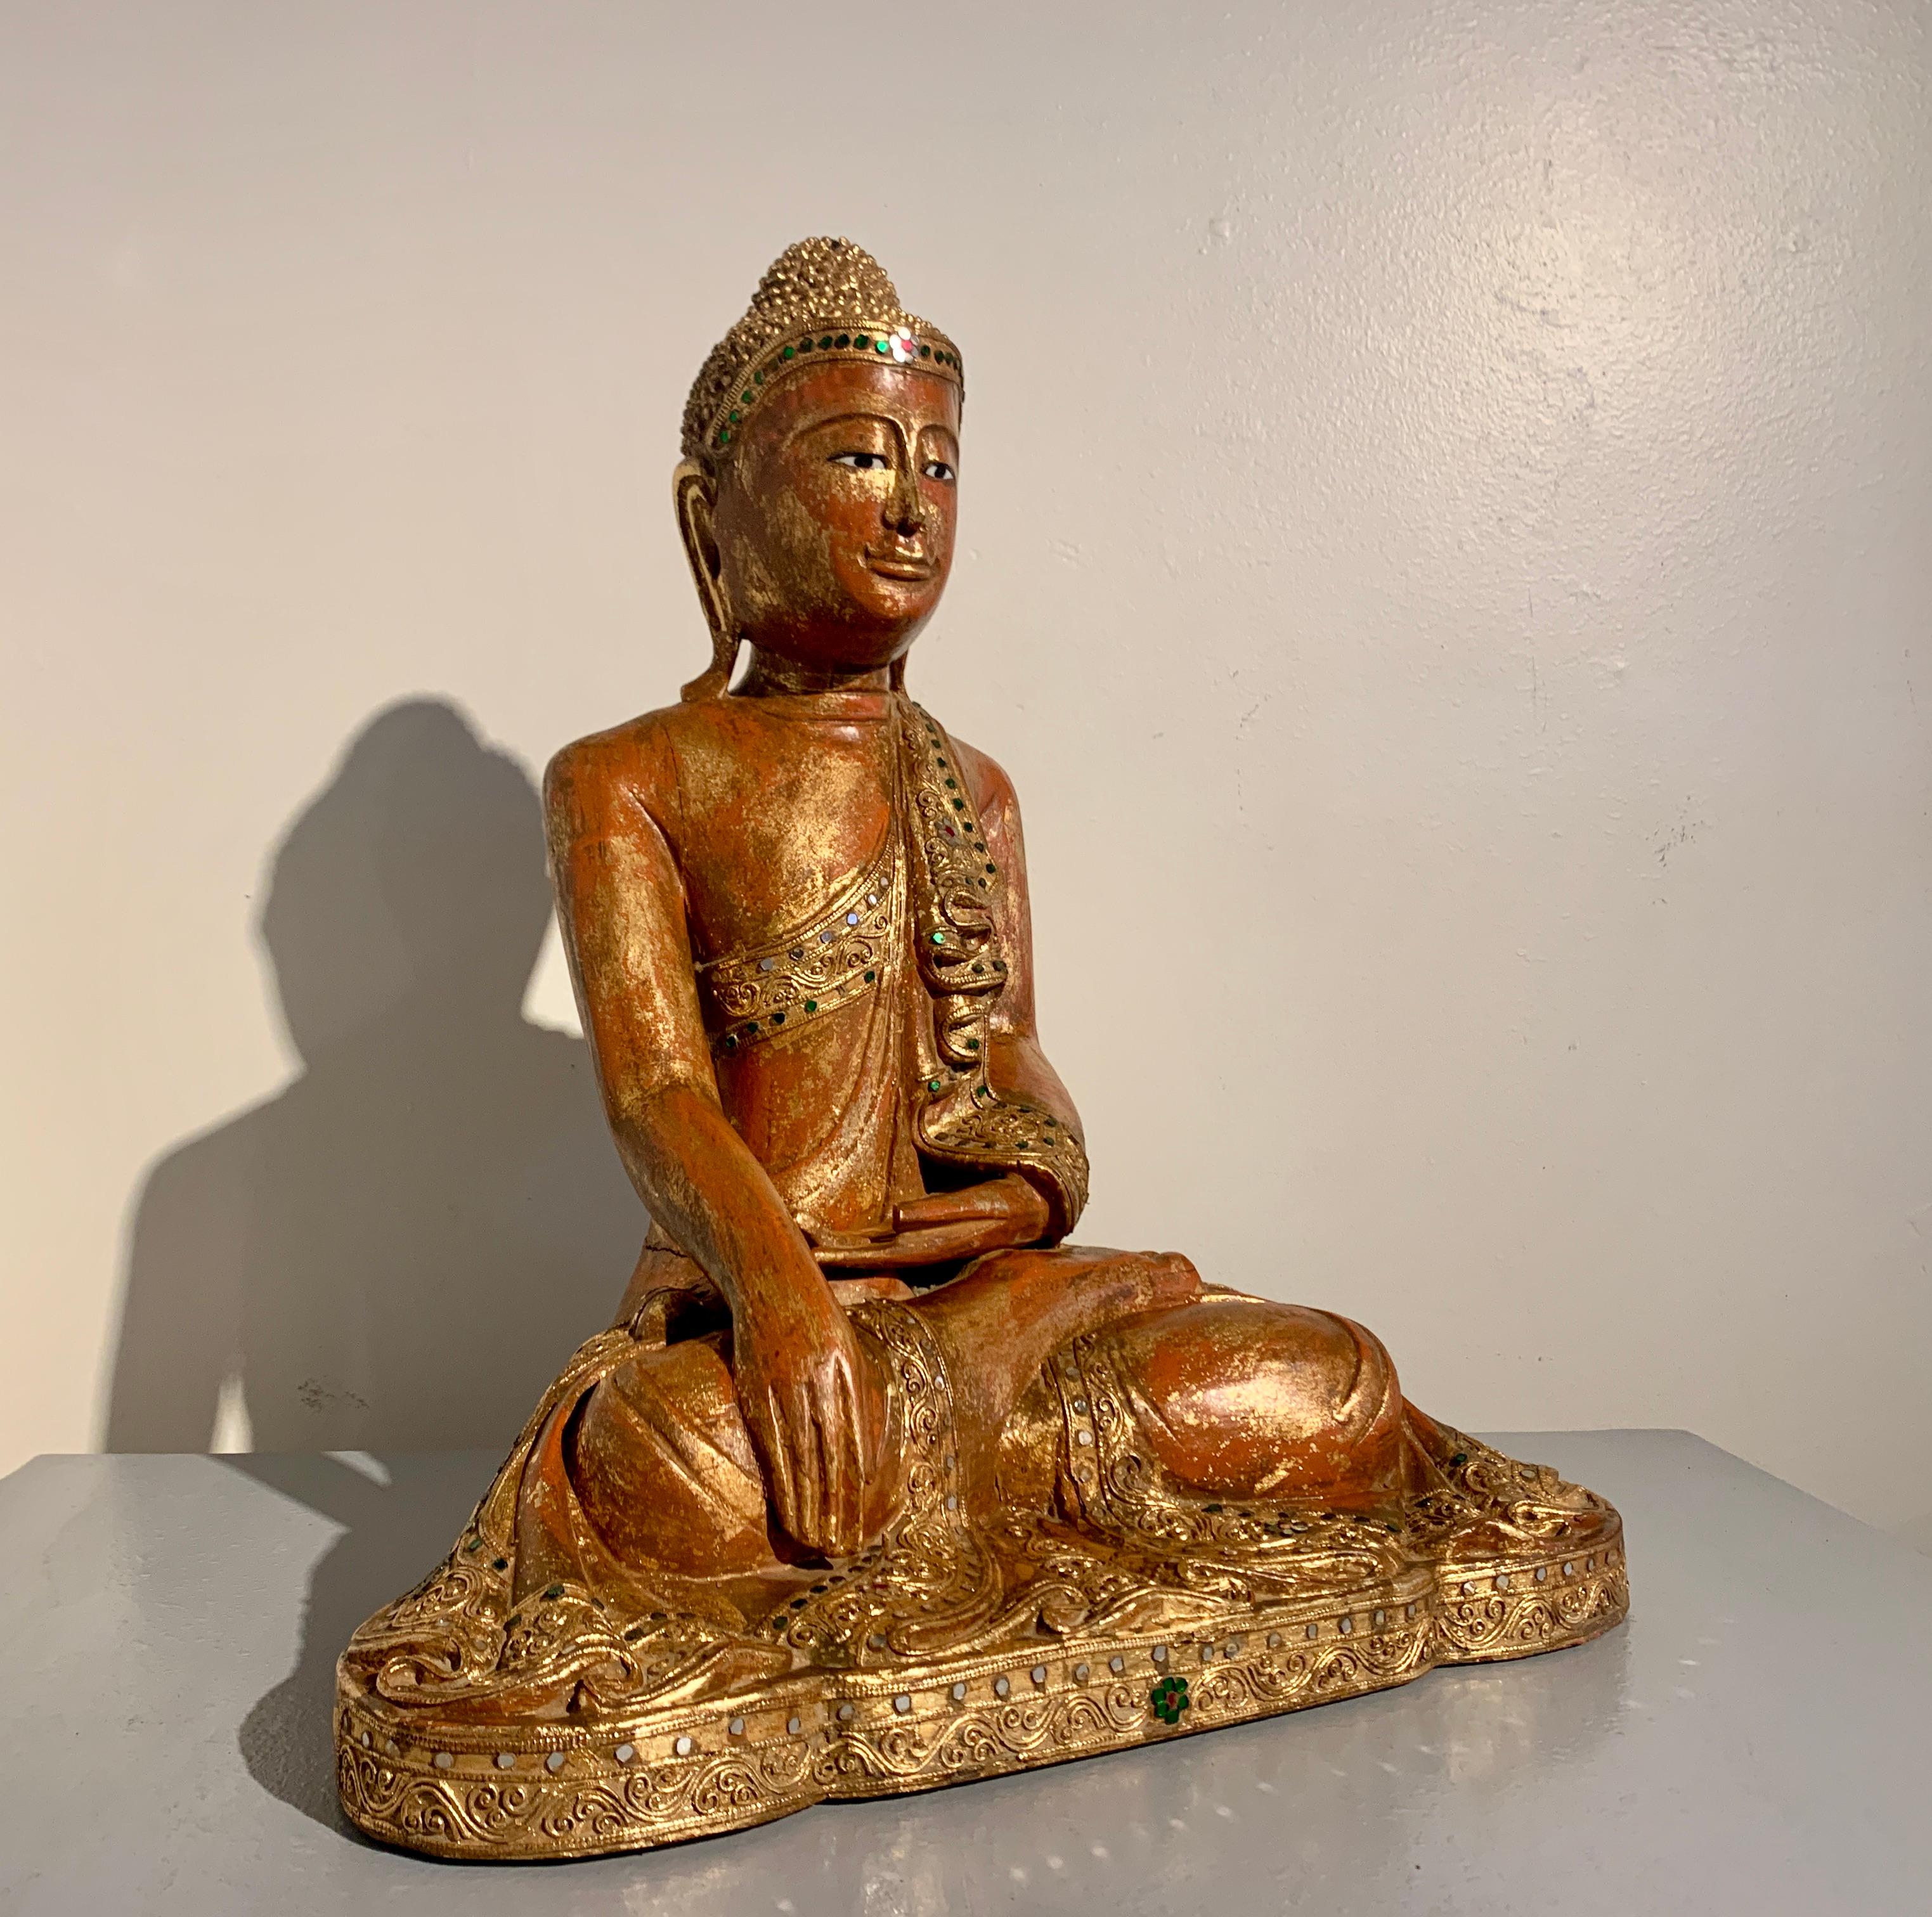 Magnifique et sereine figure de Bouddha assis en bois de teck birman sculpté, de style Mandalay et d'époque, fin du XIXe siècle, Birmanie (Myanmar).

Cet élégant Bouddha est représenté assis sur une courte base dans la position du lotus, la plante